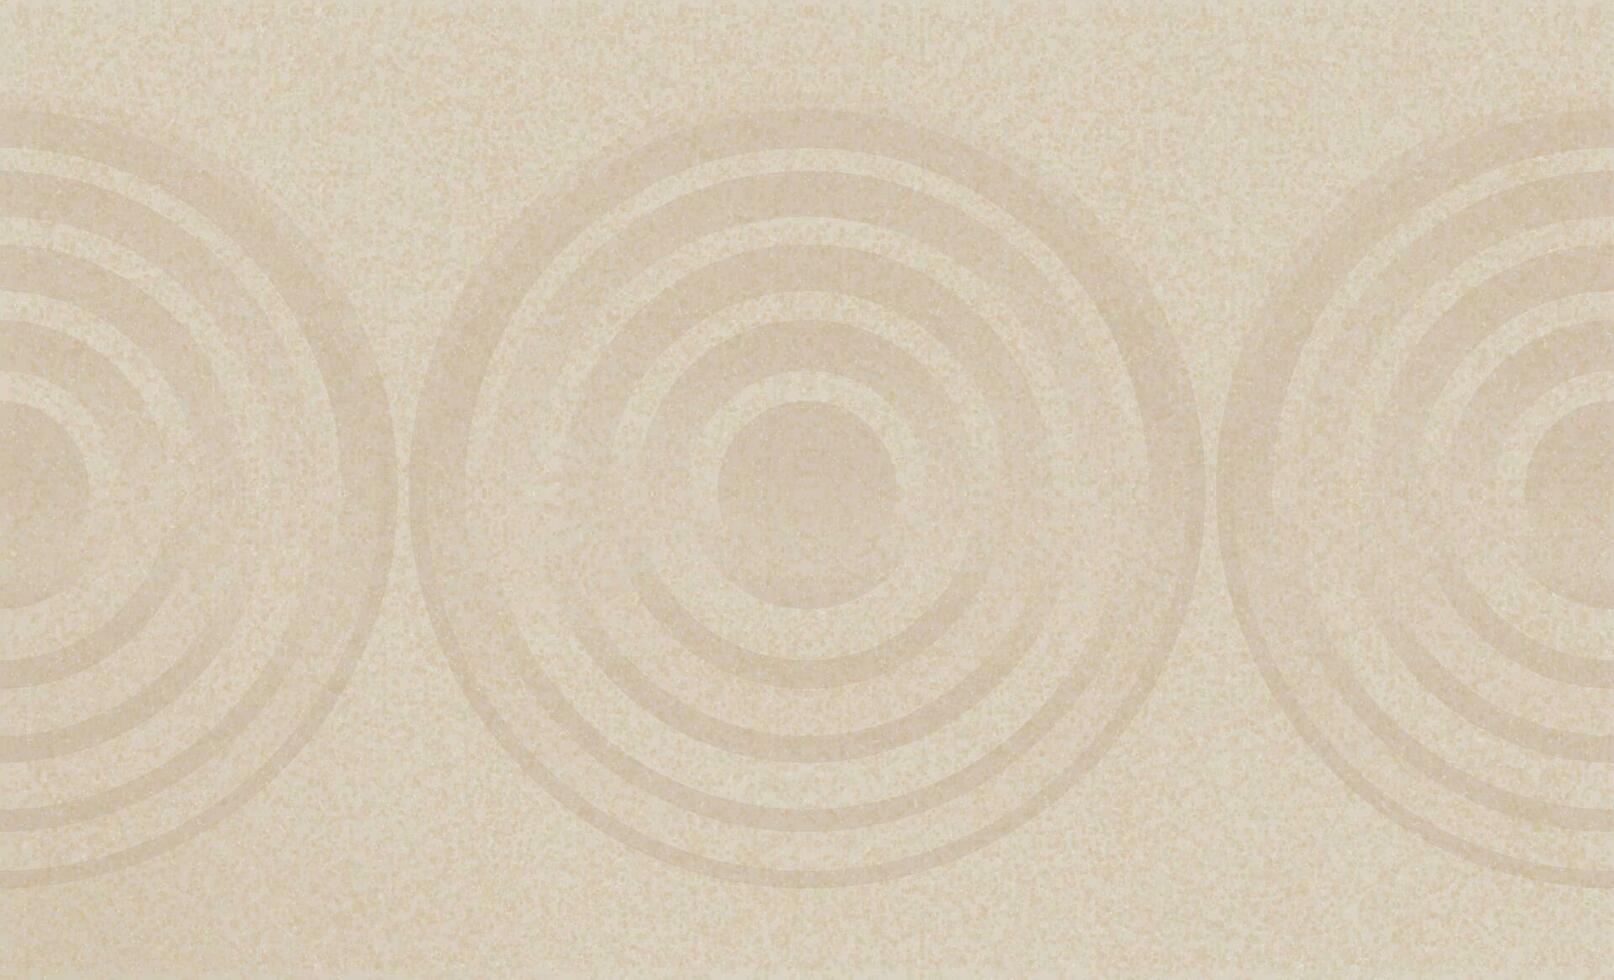 japonés zen jardín con concéntrico círculos y paralelo líneas en marrón arena superficie fondo, arena textura con sencillo espiritual patrones,armonía,meditación,zen me gusta concepto vector